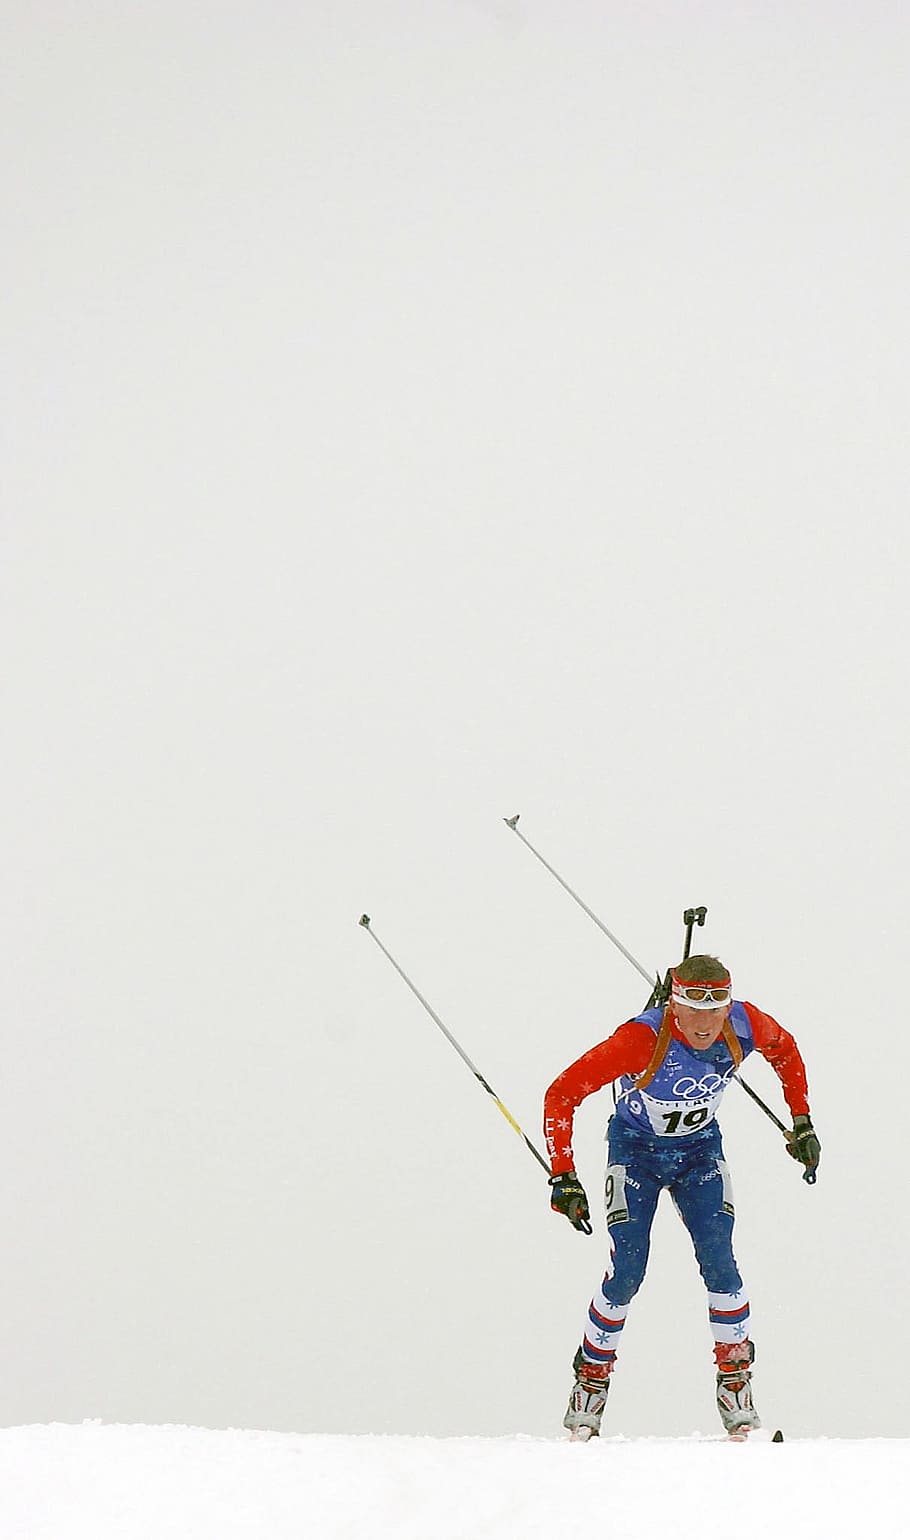 pemain ski, lintas negara, salju, musim dingin, pria, kompetisi, biathalon, ski, kecepatan, pelatihan